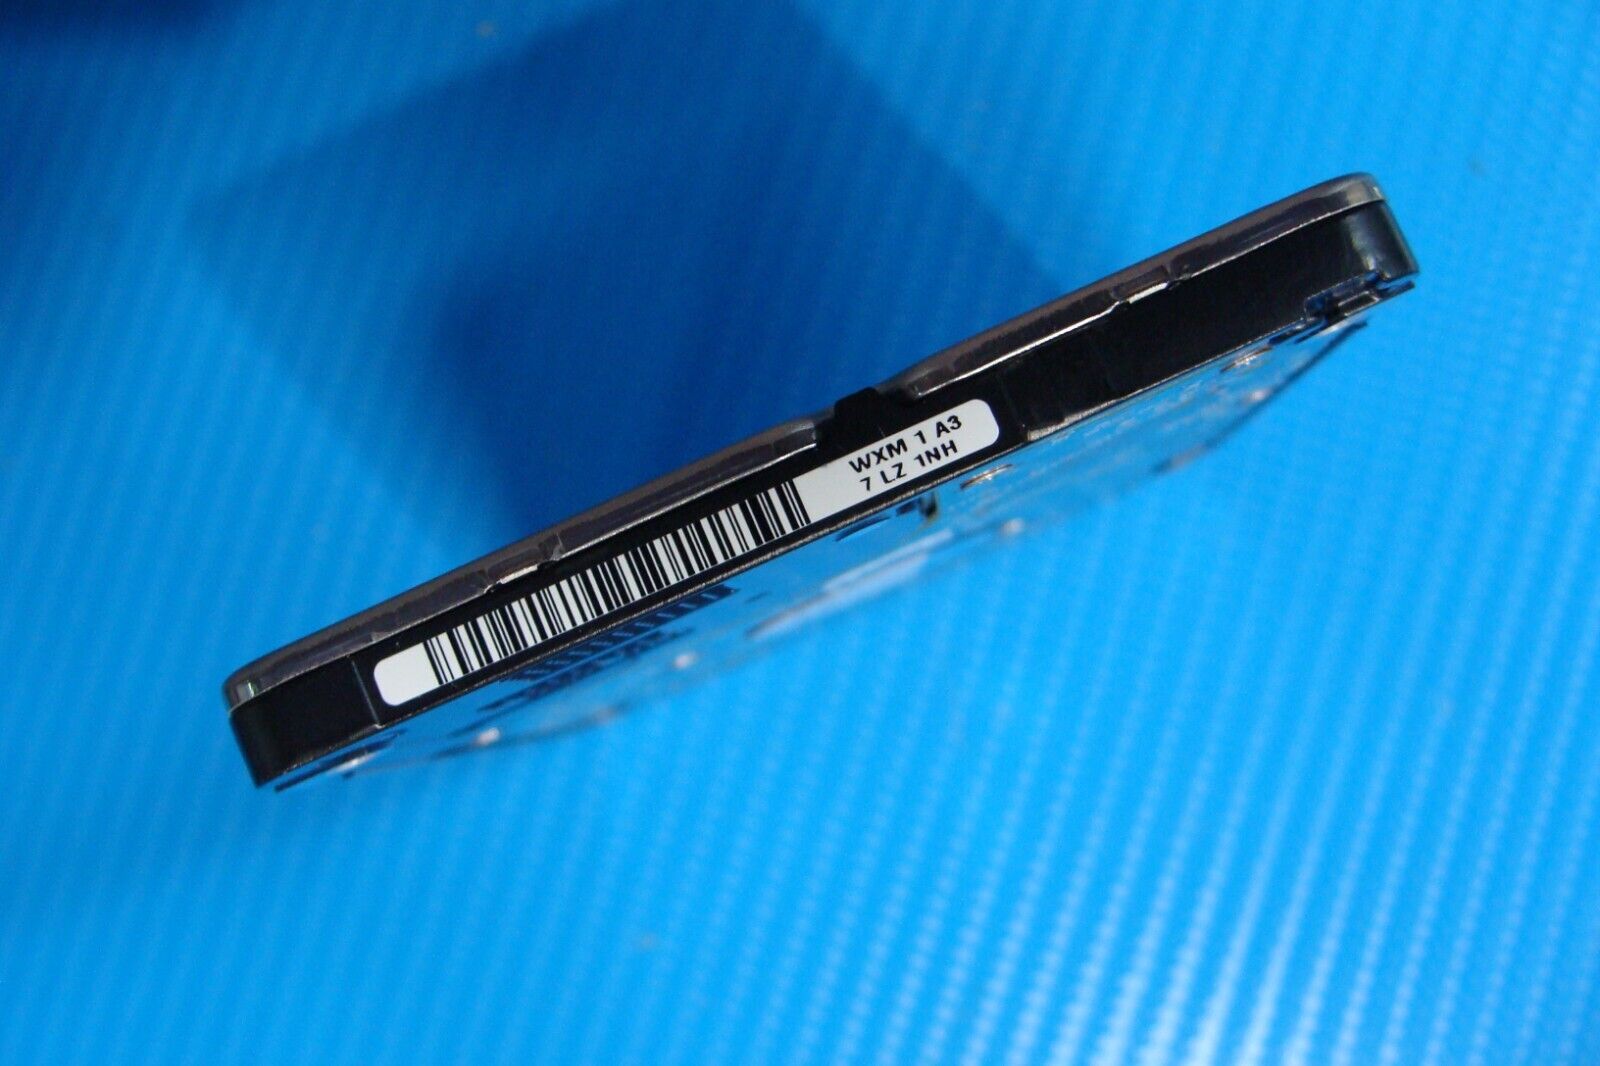 Acer A515-51-3509 Western Digital 1TB SATA 2.5